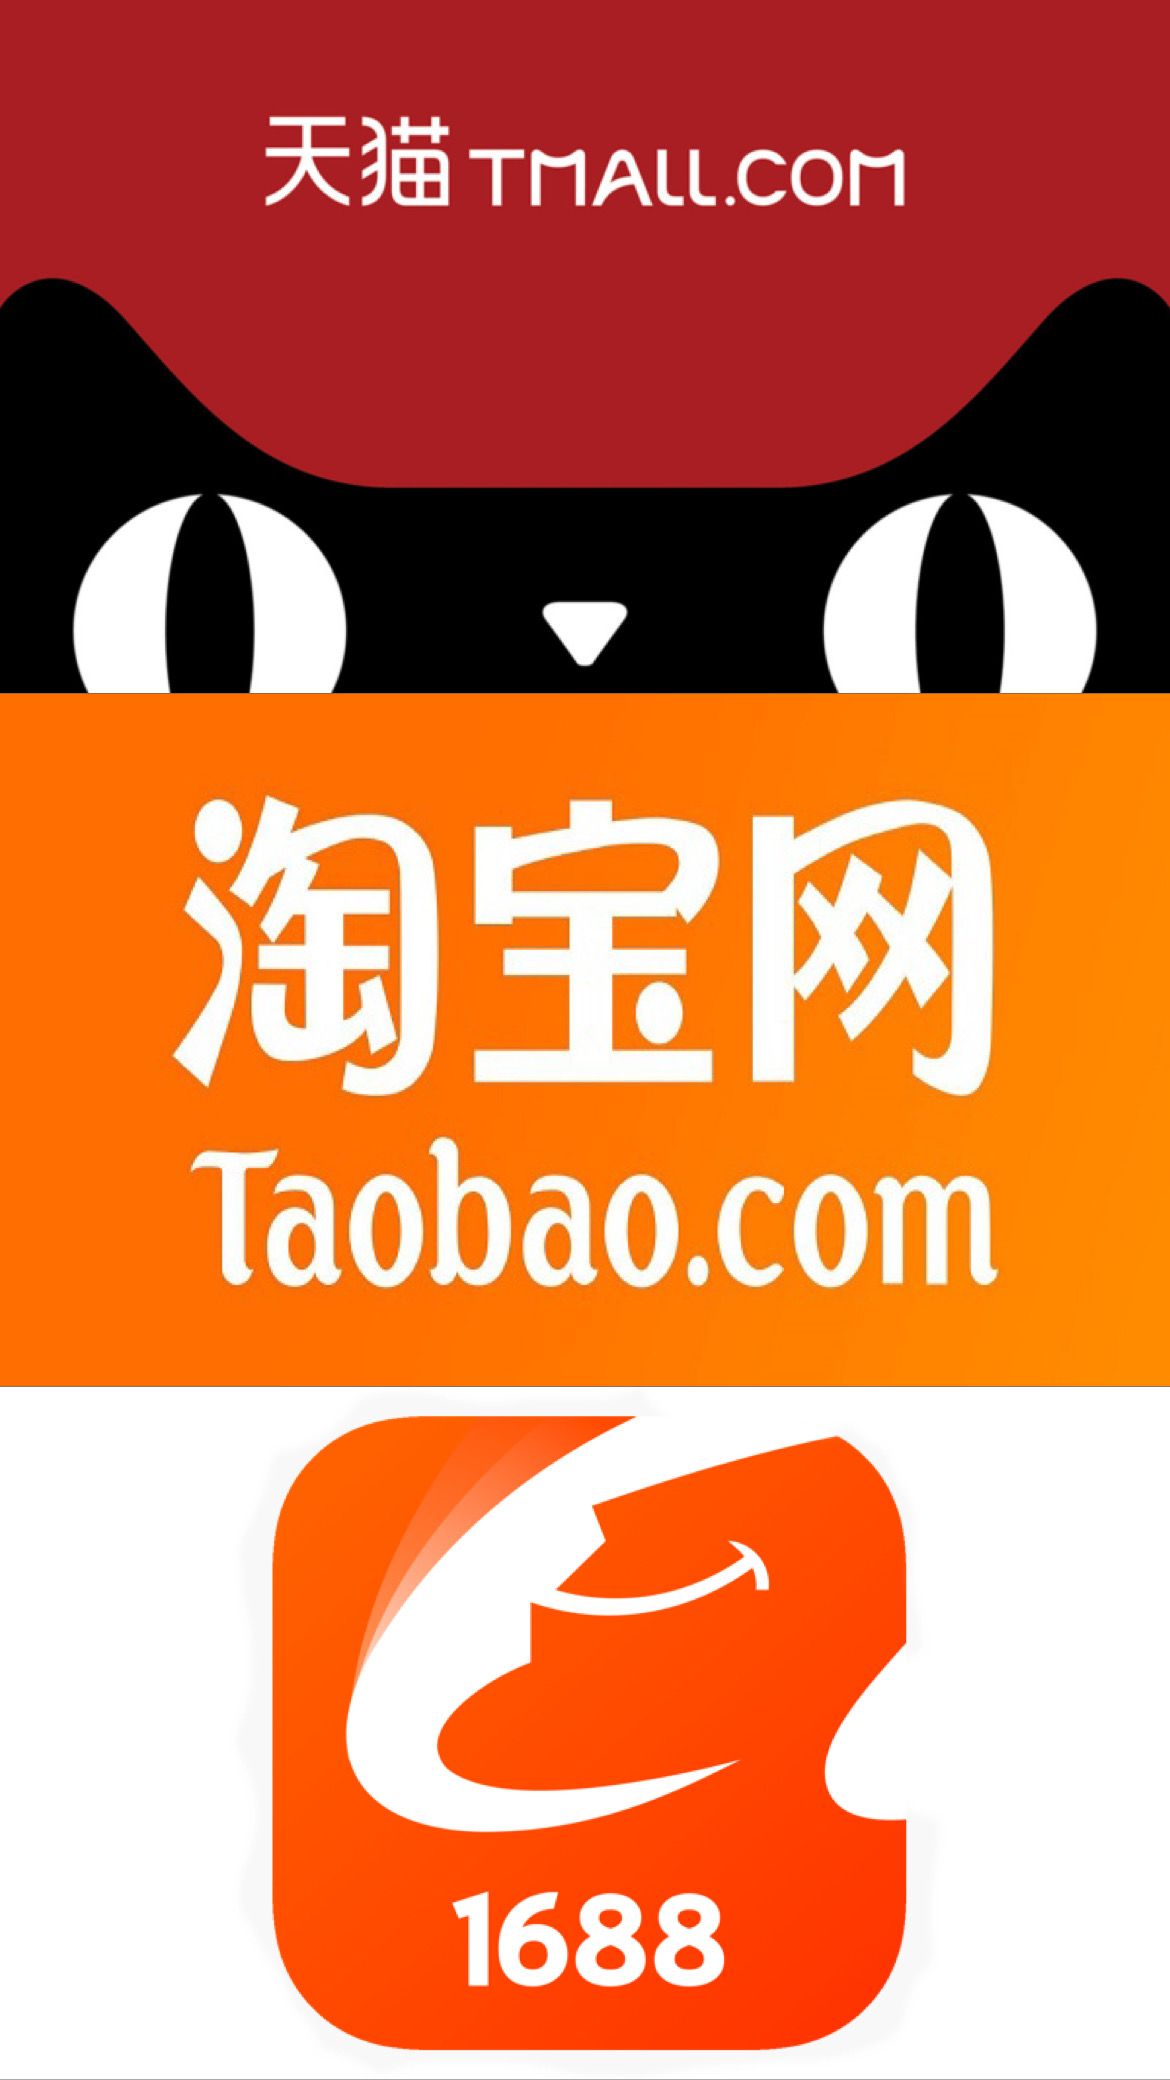 Китайский интернет-аукцион Taobao: больше, чем eBay, дешевле, чем eBay / Offсянка